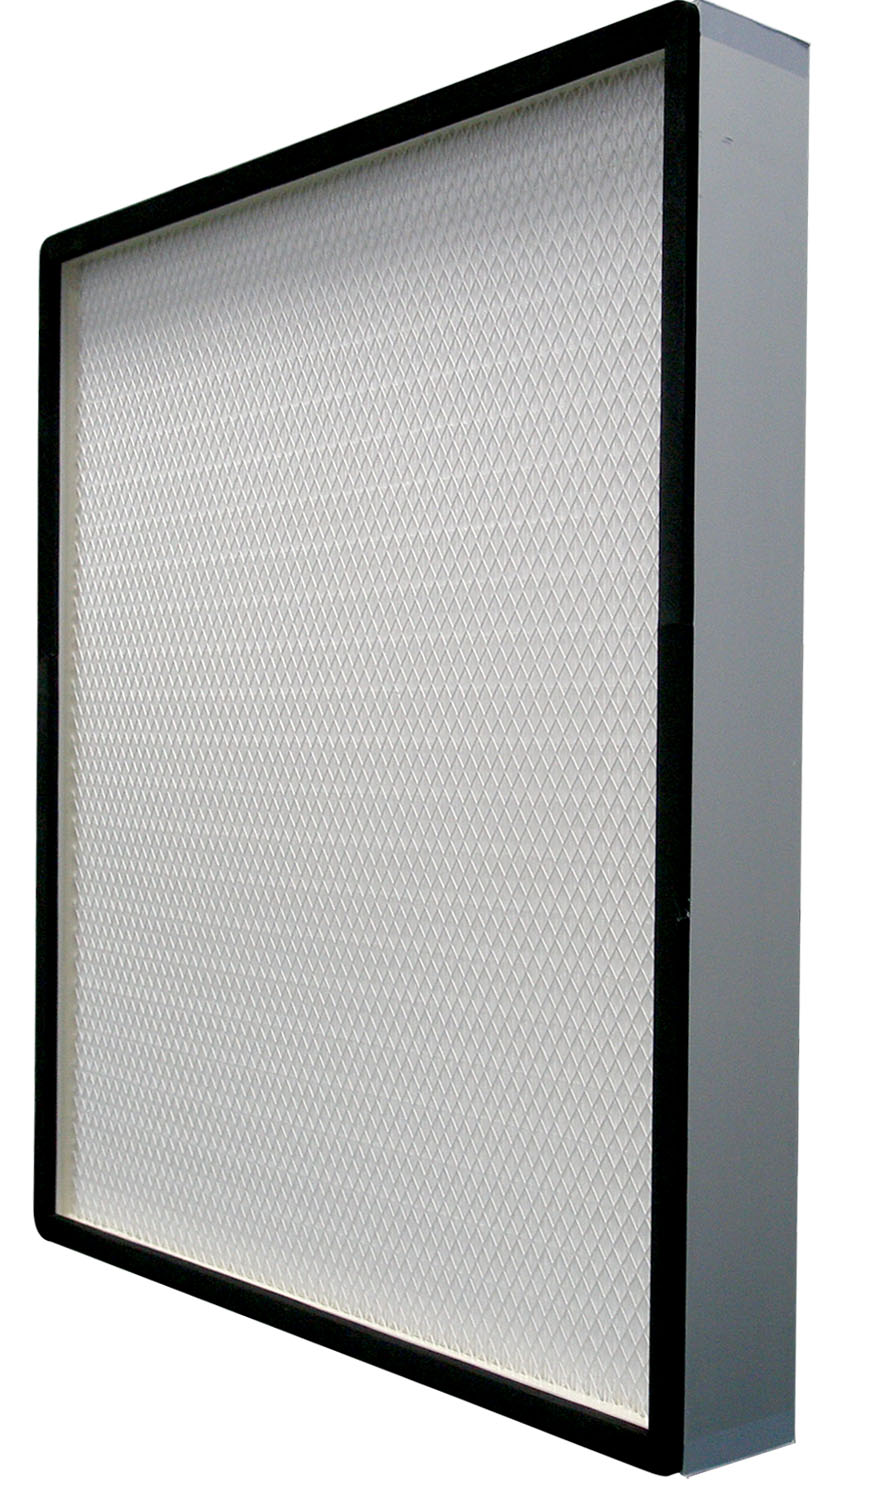 无隔板高效空气过滤器常用规格参数－GB 13554-2008 «高效空气过滤器»